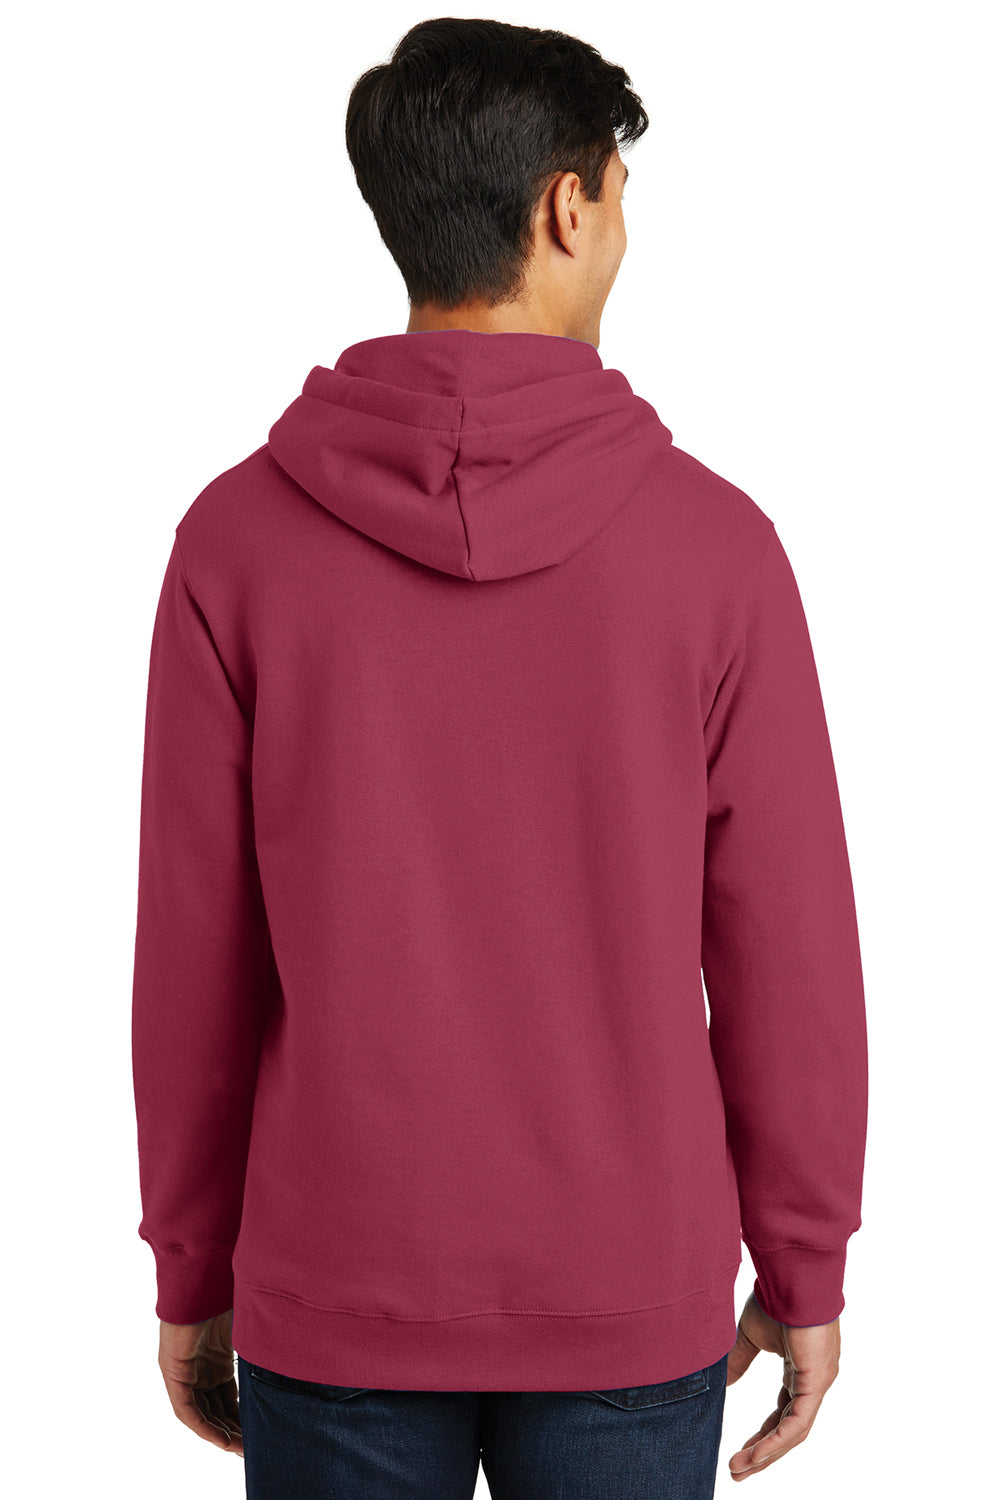 Port & Company PC850H Mens Fan Favorite Fleece Hooded Sweatshirt Hoodie Garnet Red Back